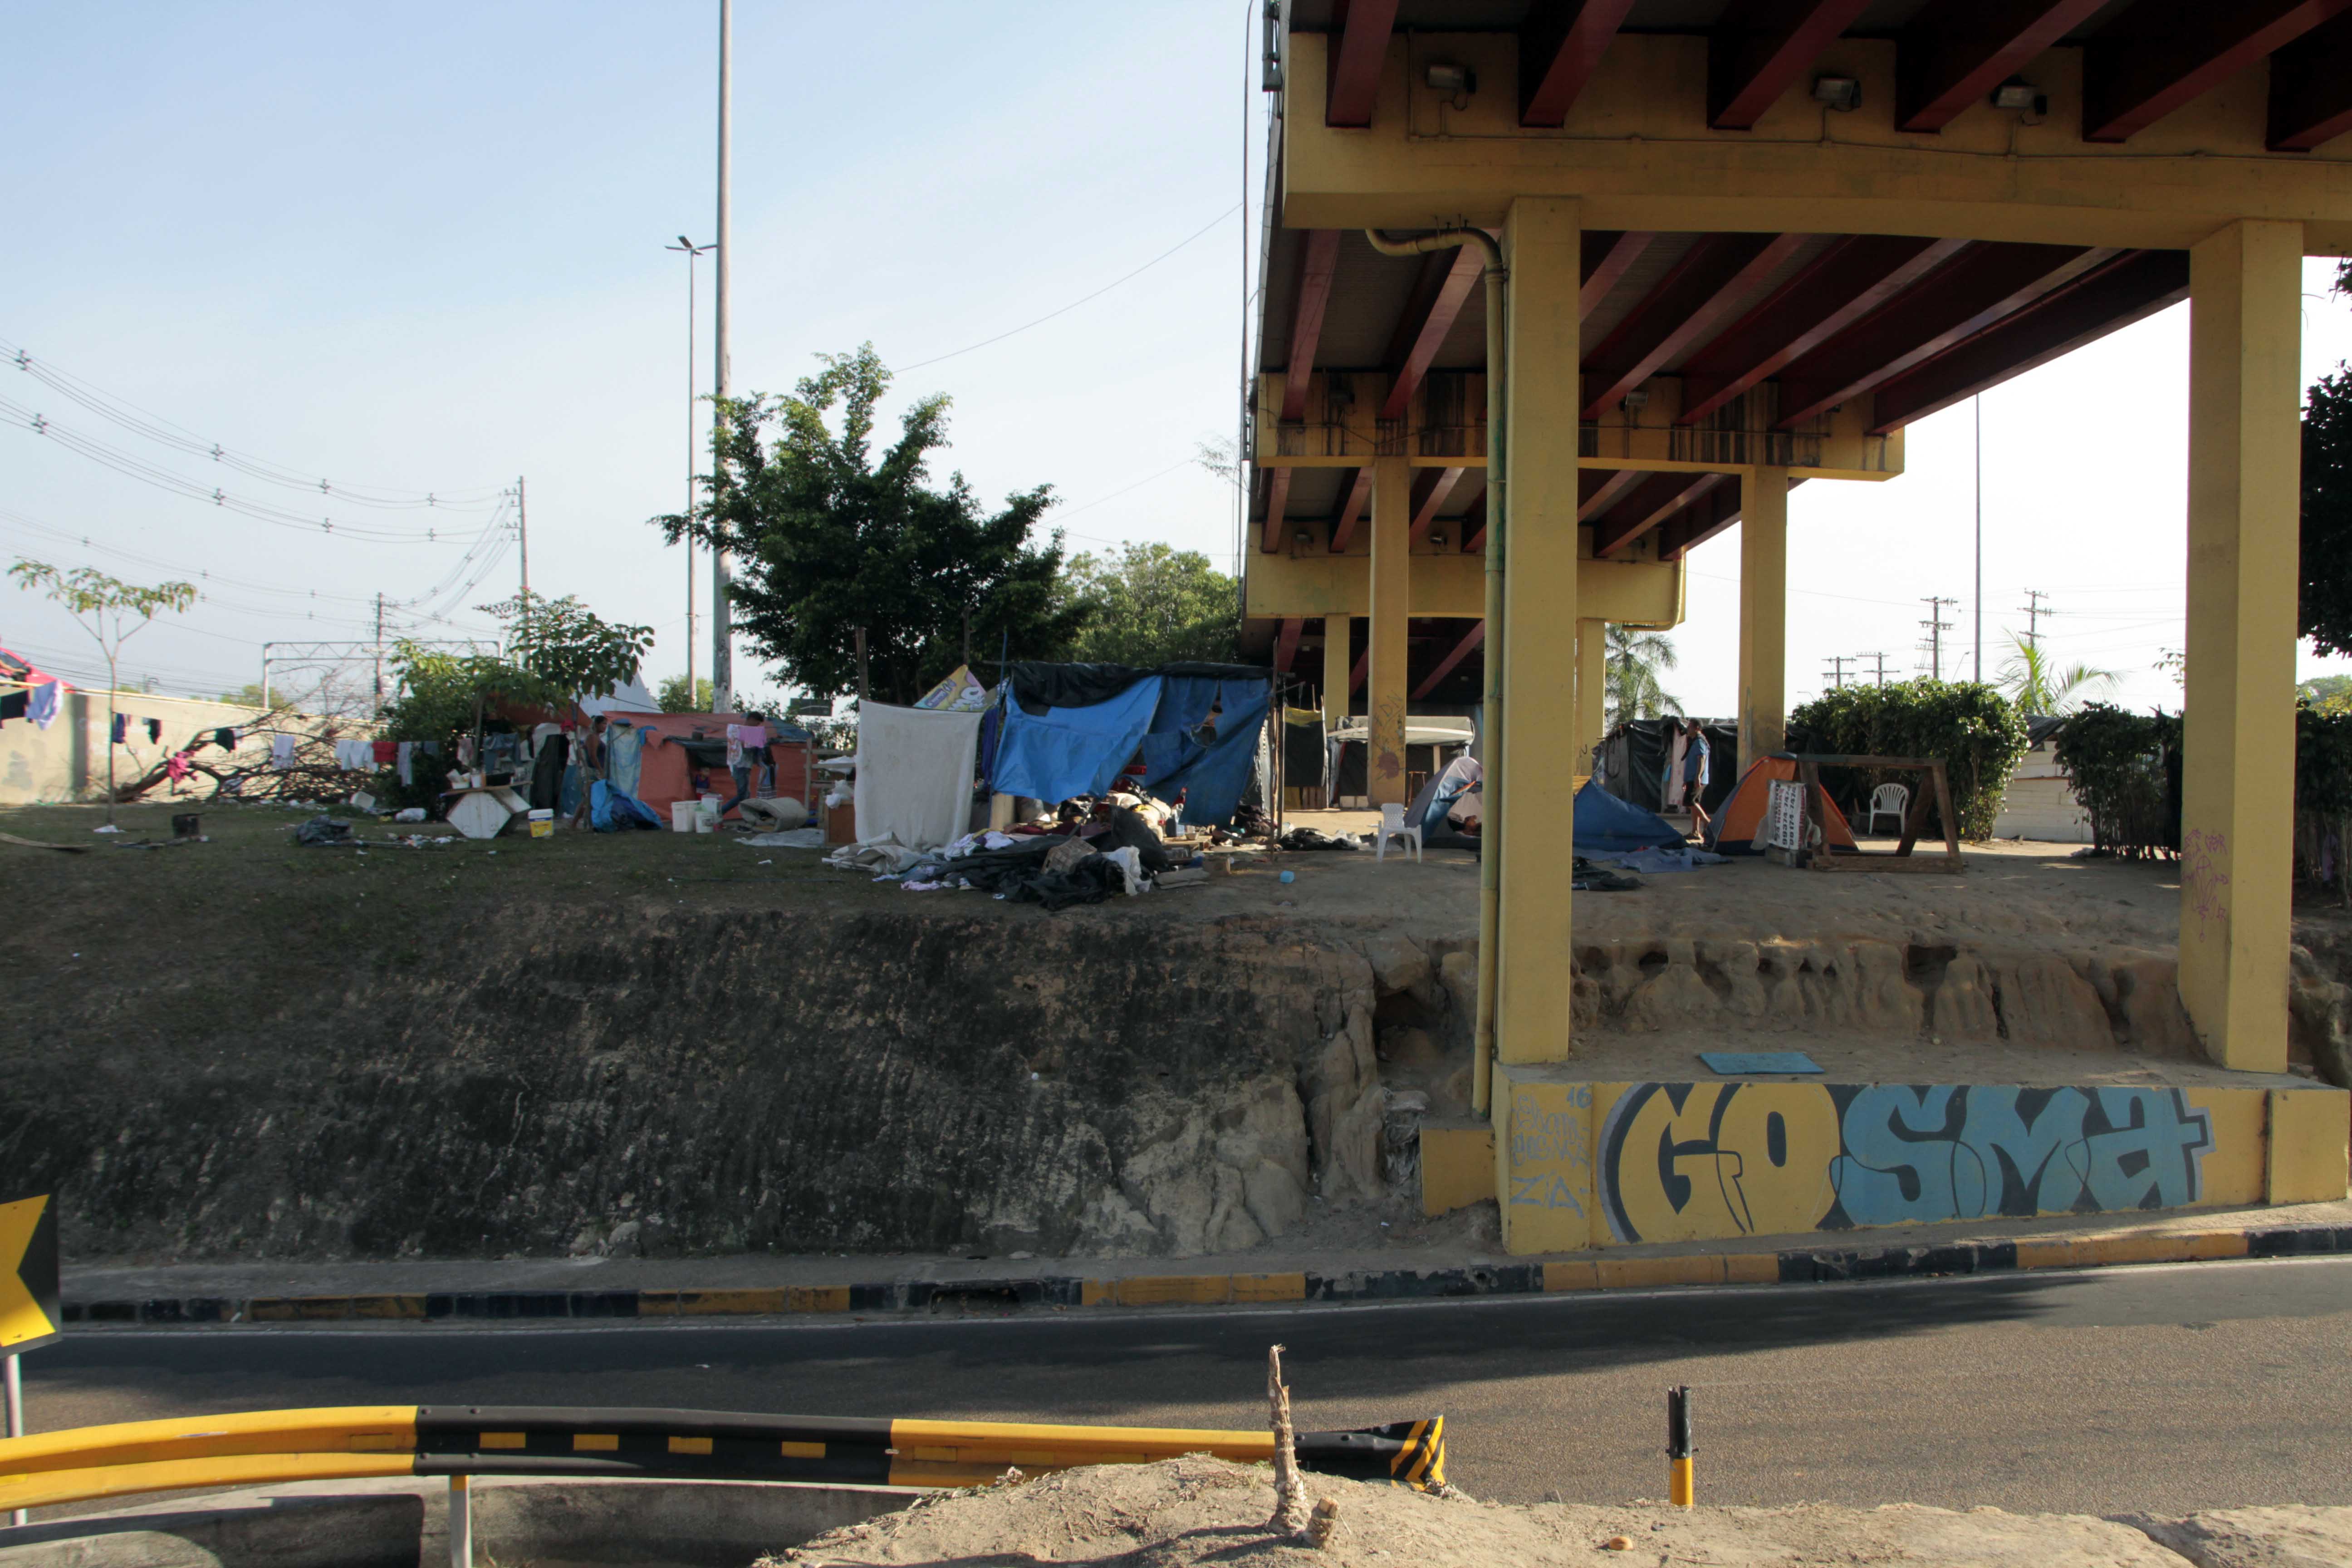 Refugiados venezuelanos são atendidos em nova estrutura